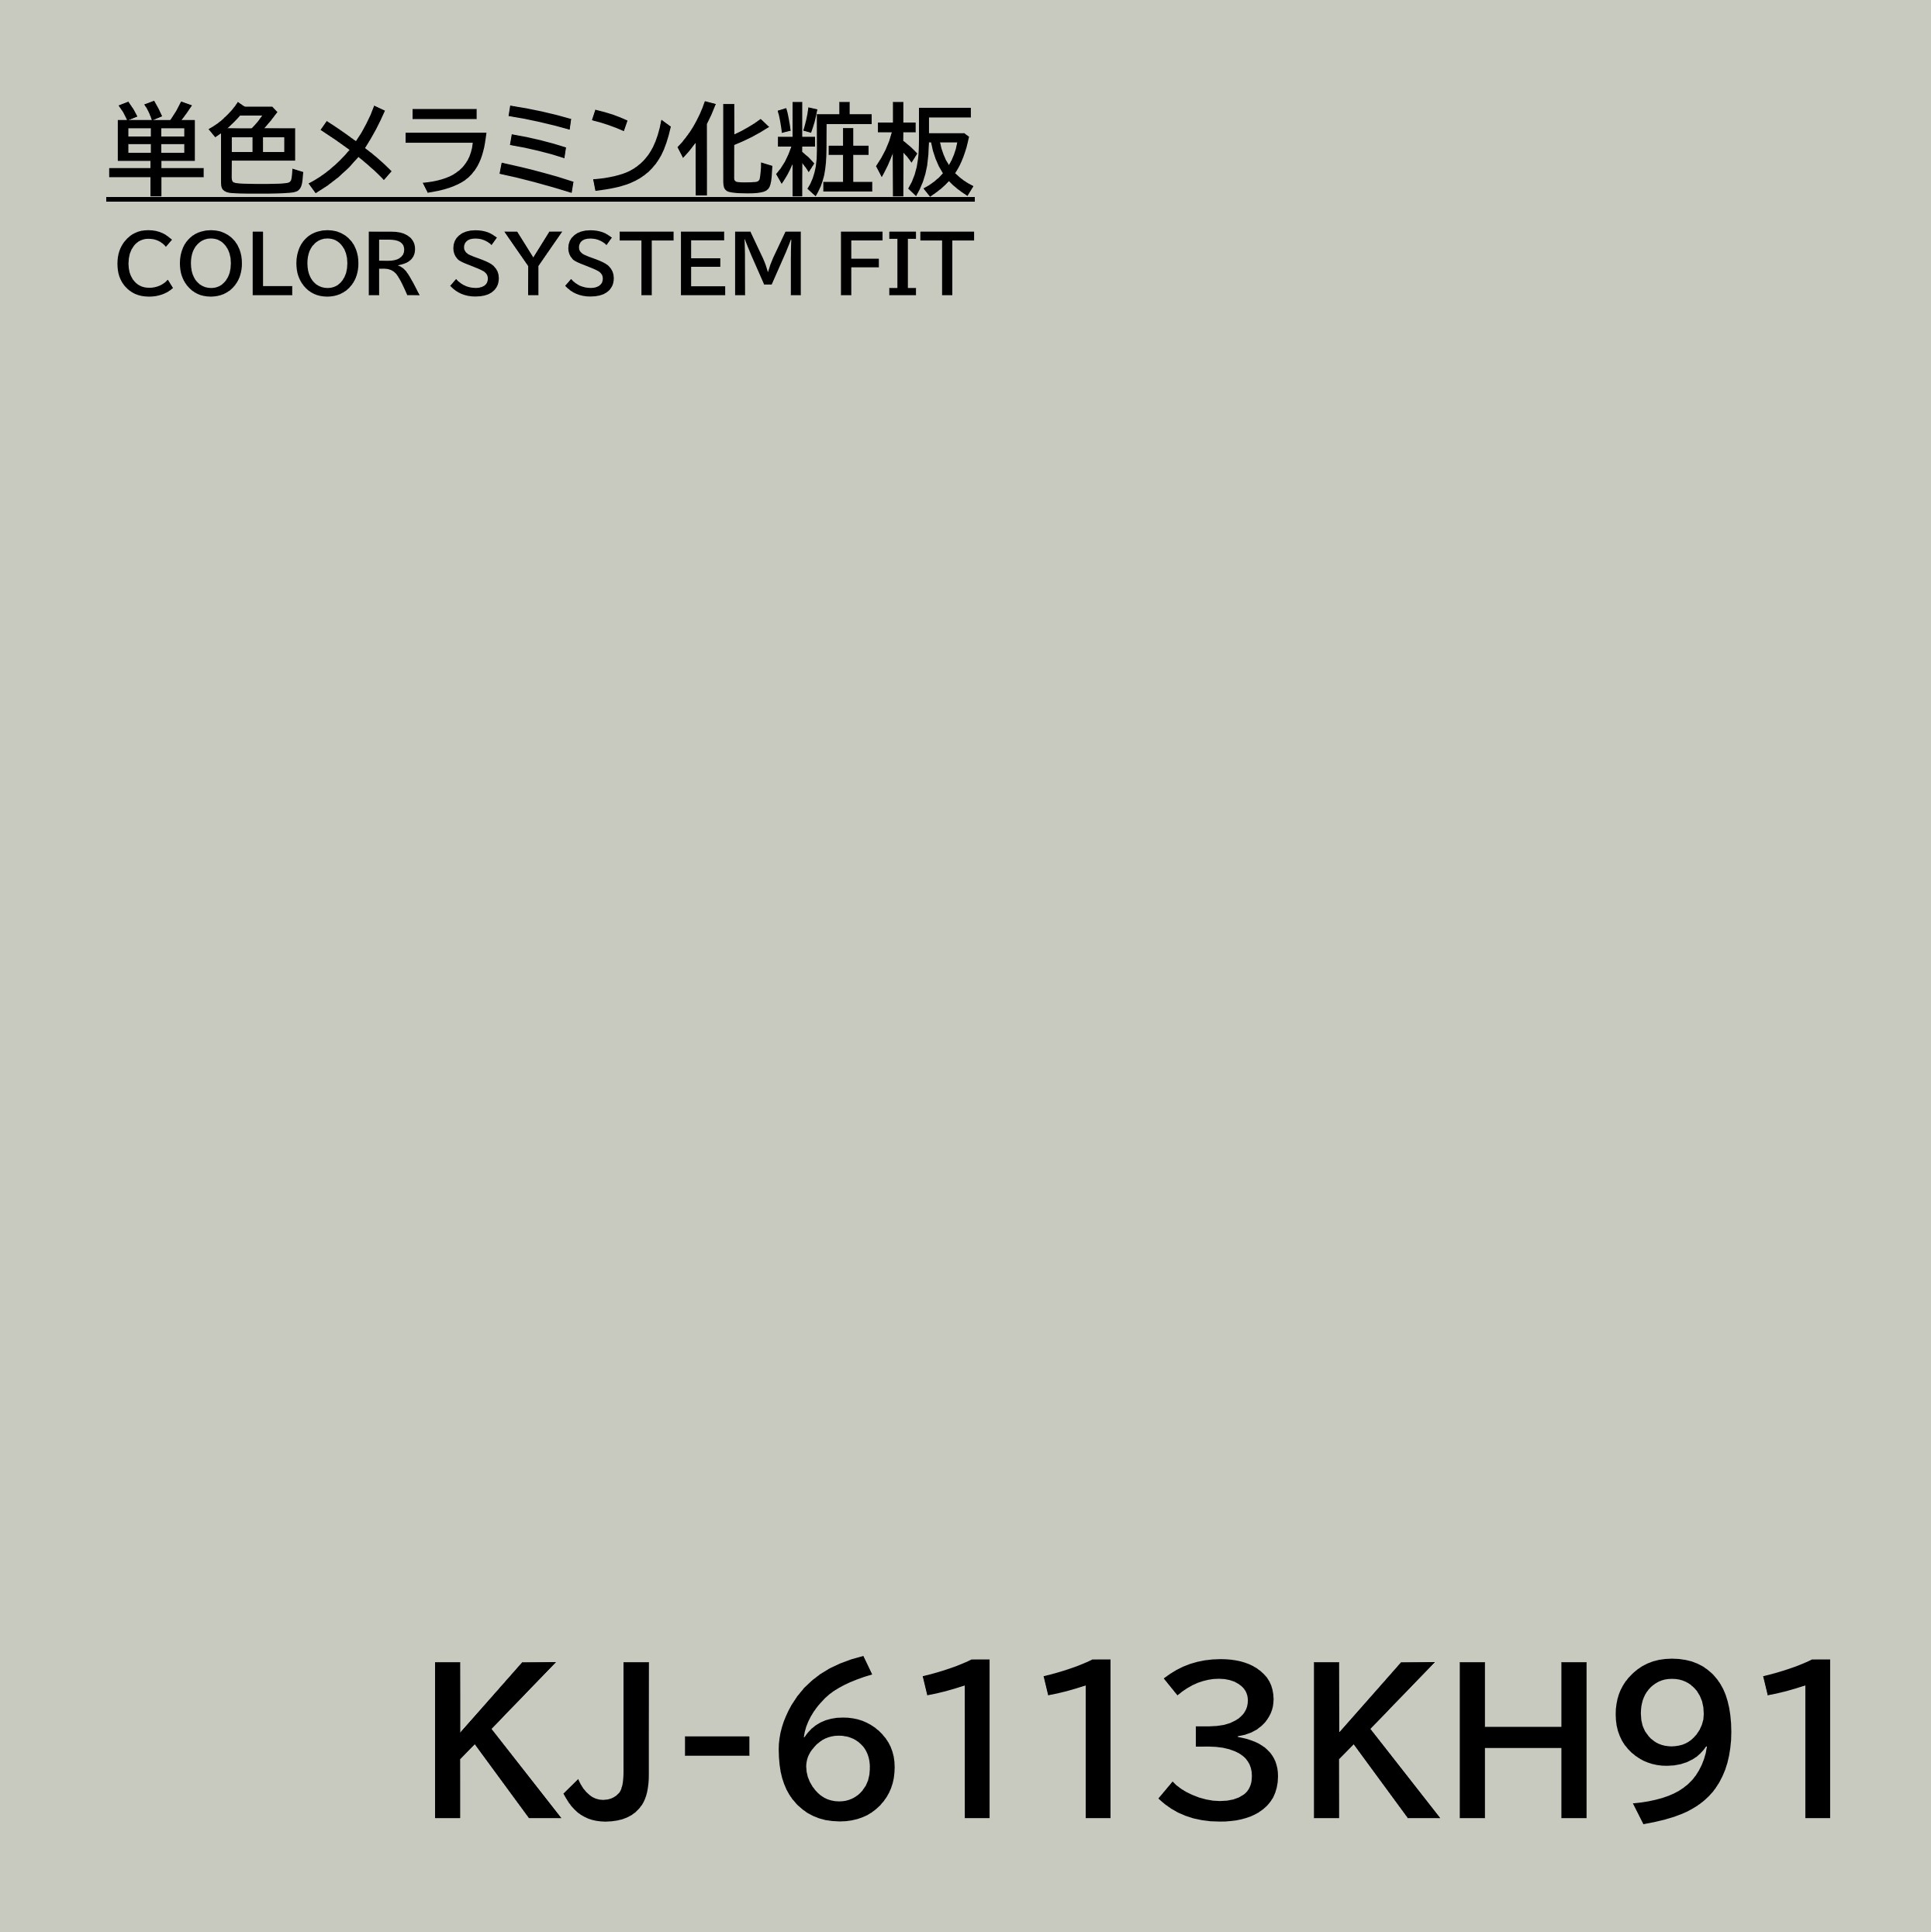 メラミン化粧板 カラーシステムフィット KJ-6113KH91 4×8 0.95mm 1230×2450mm エンボスタイプ 単色 化粧合板